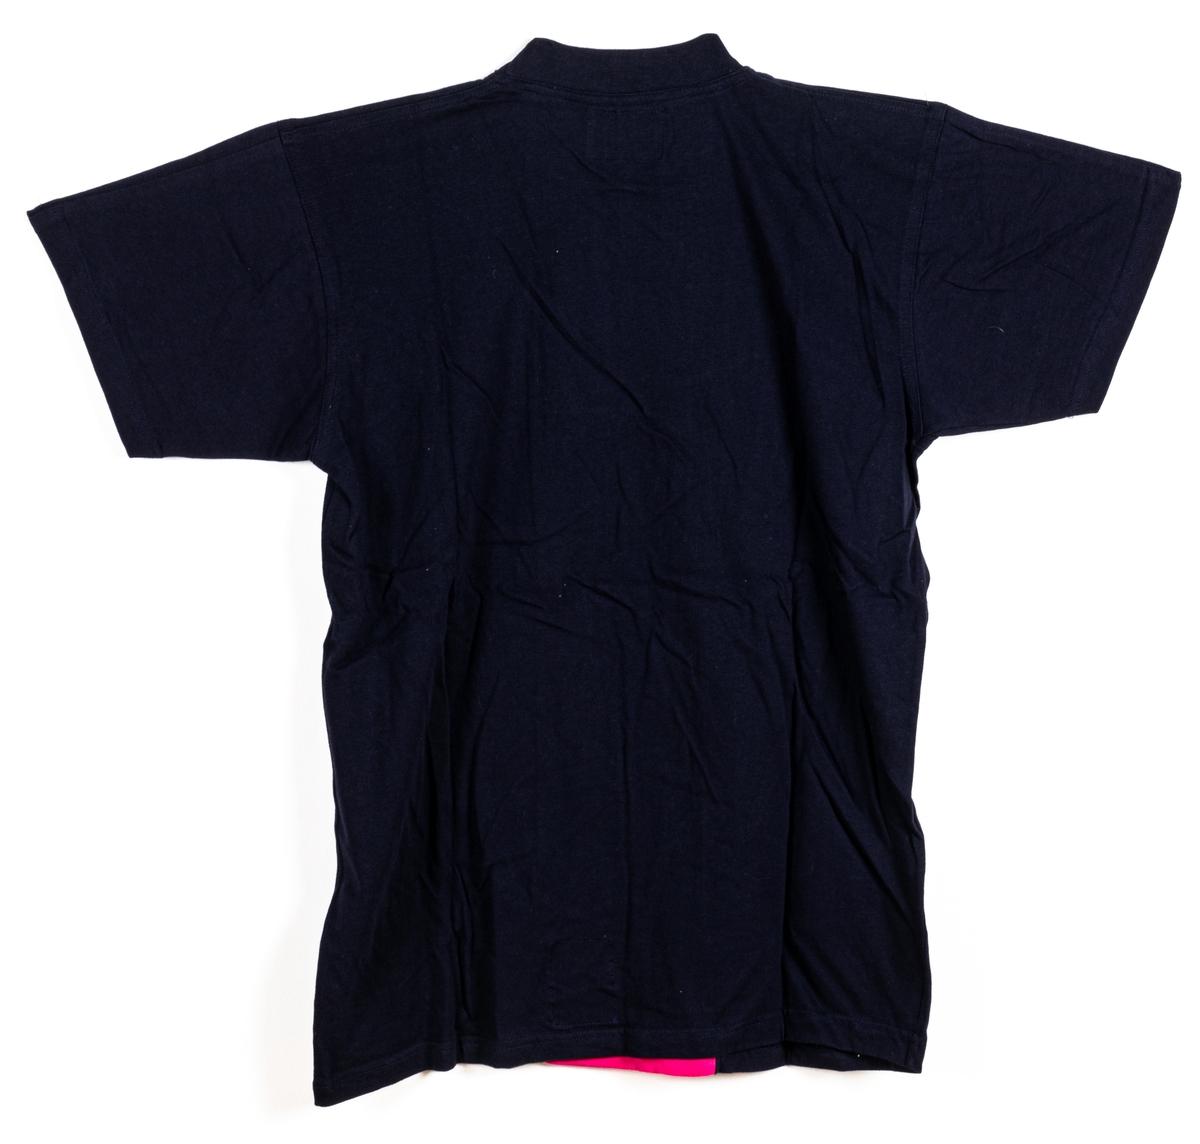 T-shirt i marinblå och magenta med flerfärgad broderad text och etikett.